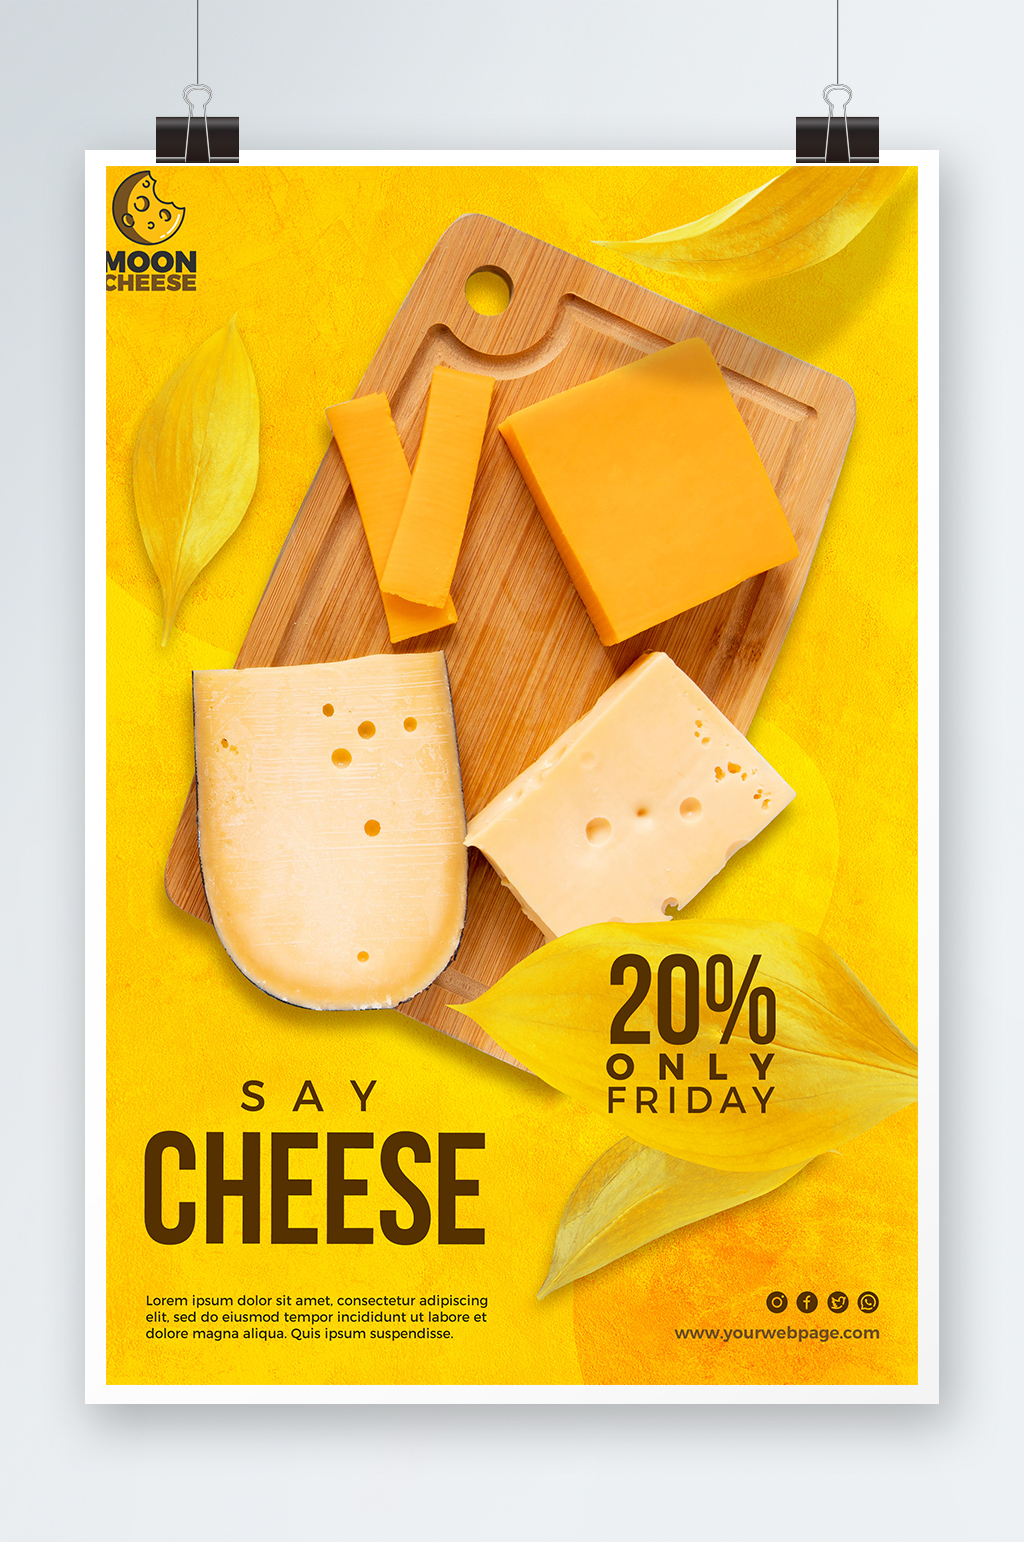 奶酪片广告图片